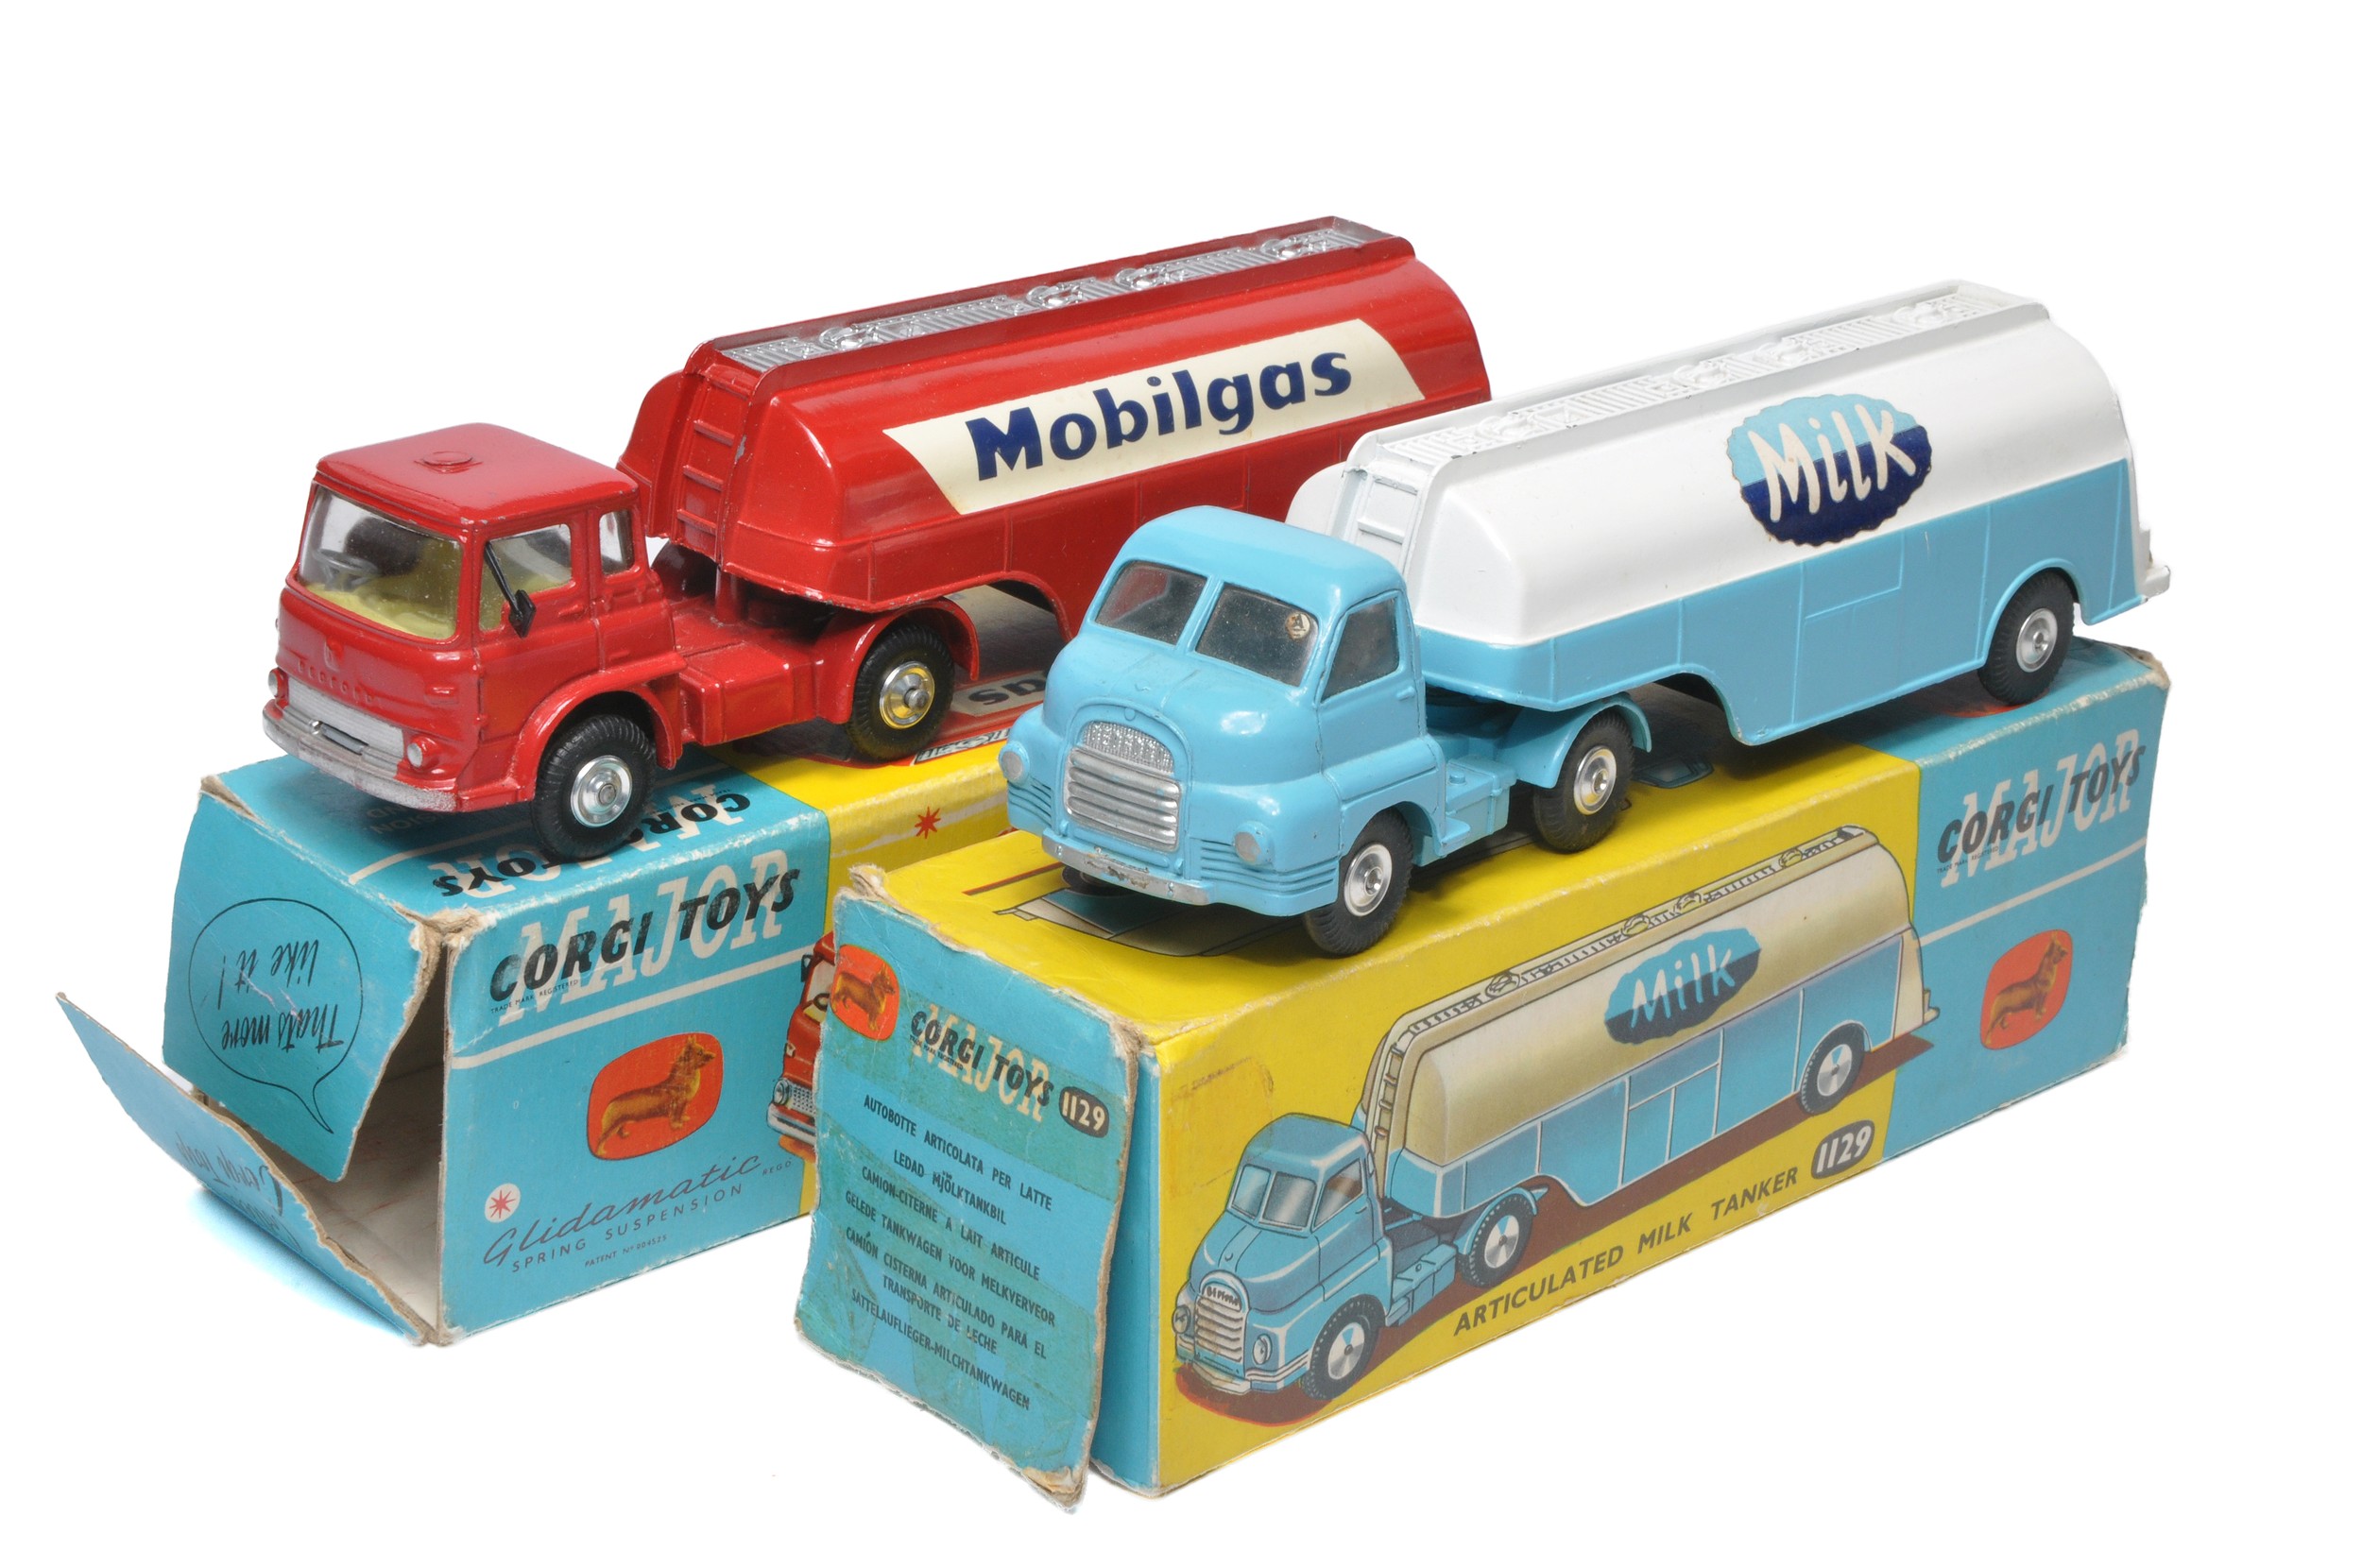 Corgi duo including Milk and Mobilgas Tankers. Models display generally very good (mobilgas tanker